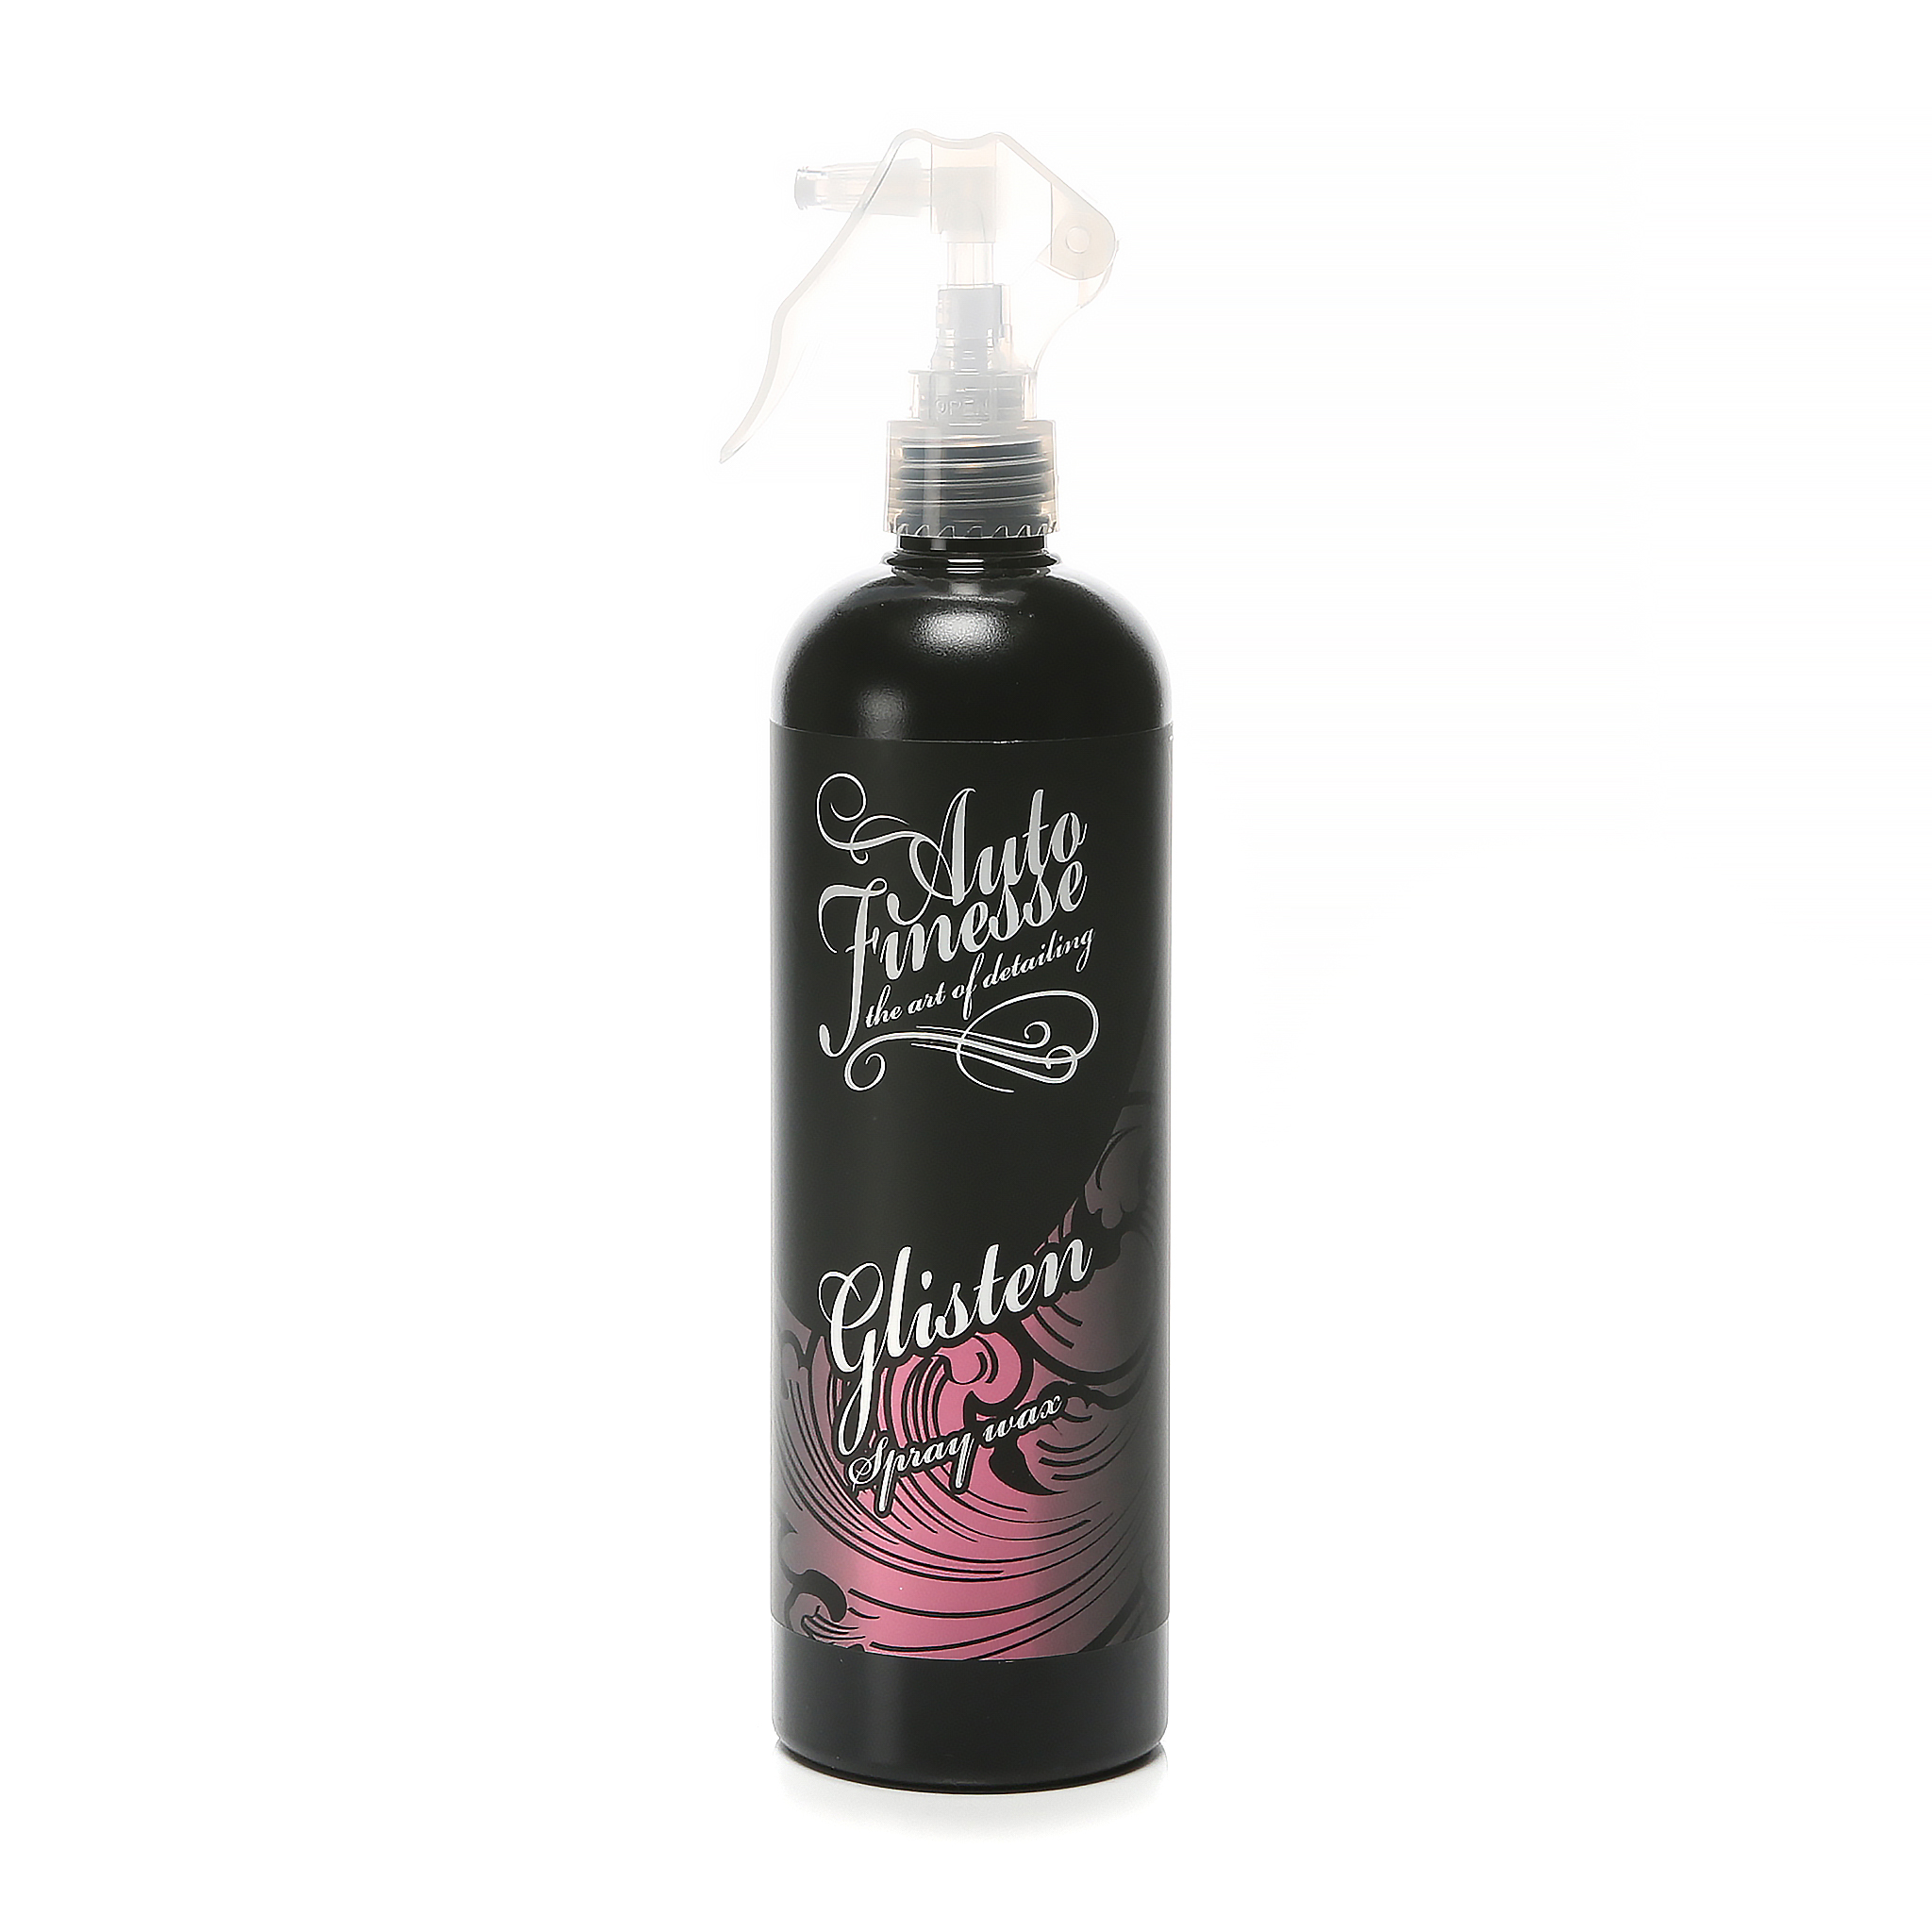 Hurtigvoks Auto Finesse Glisten Spray Wax, 500 ml